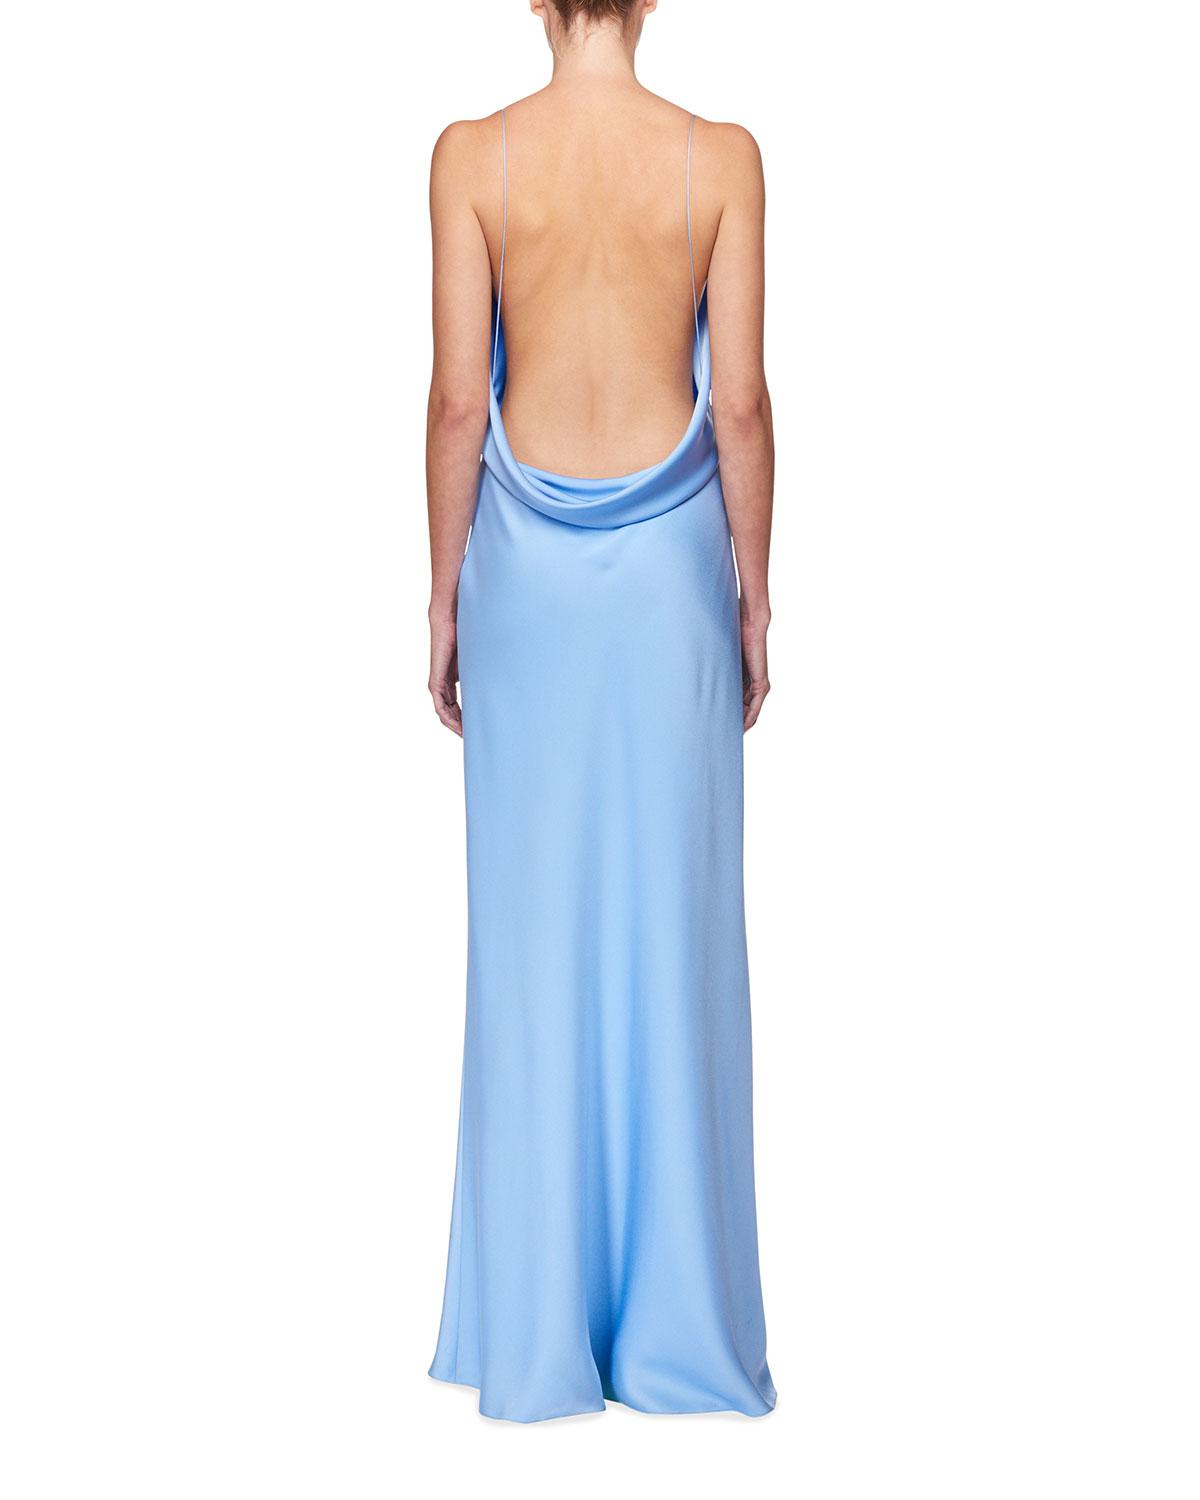 light blue silk dress long